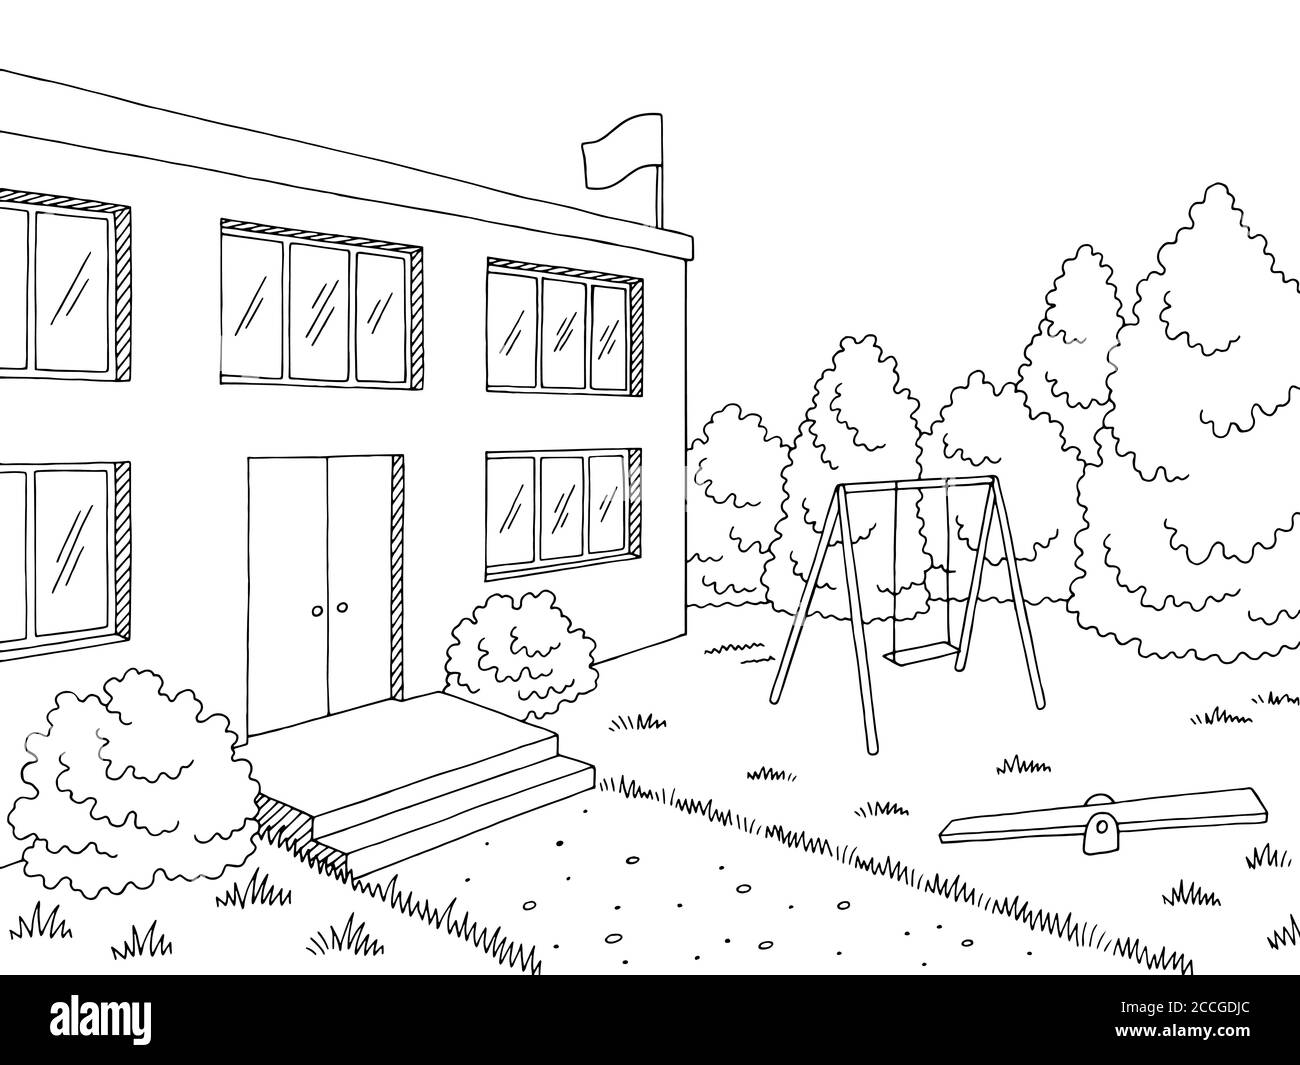 Vorschulgebäude äußere Grafik schwarz weiß Skizze Illustration Vektor Stock Vektor